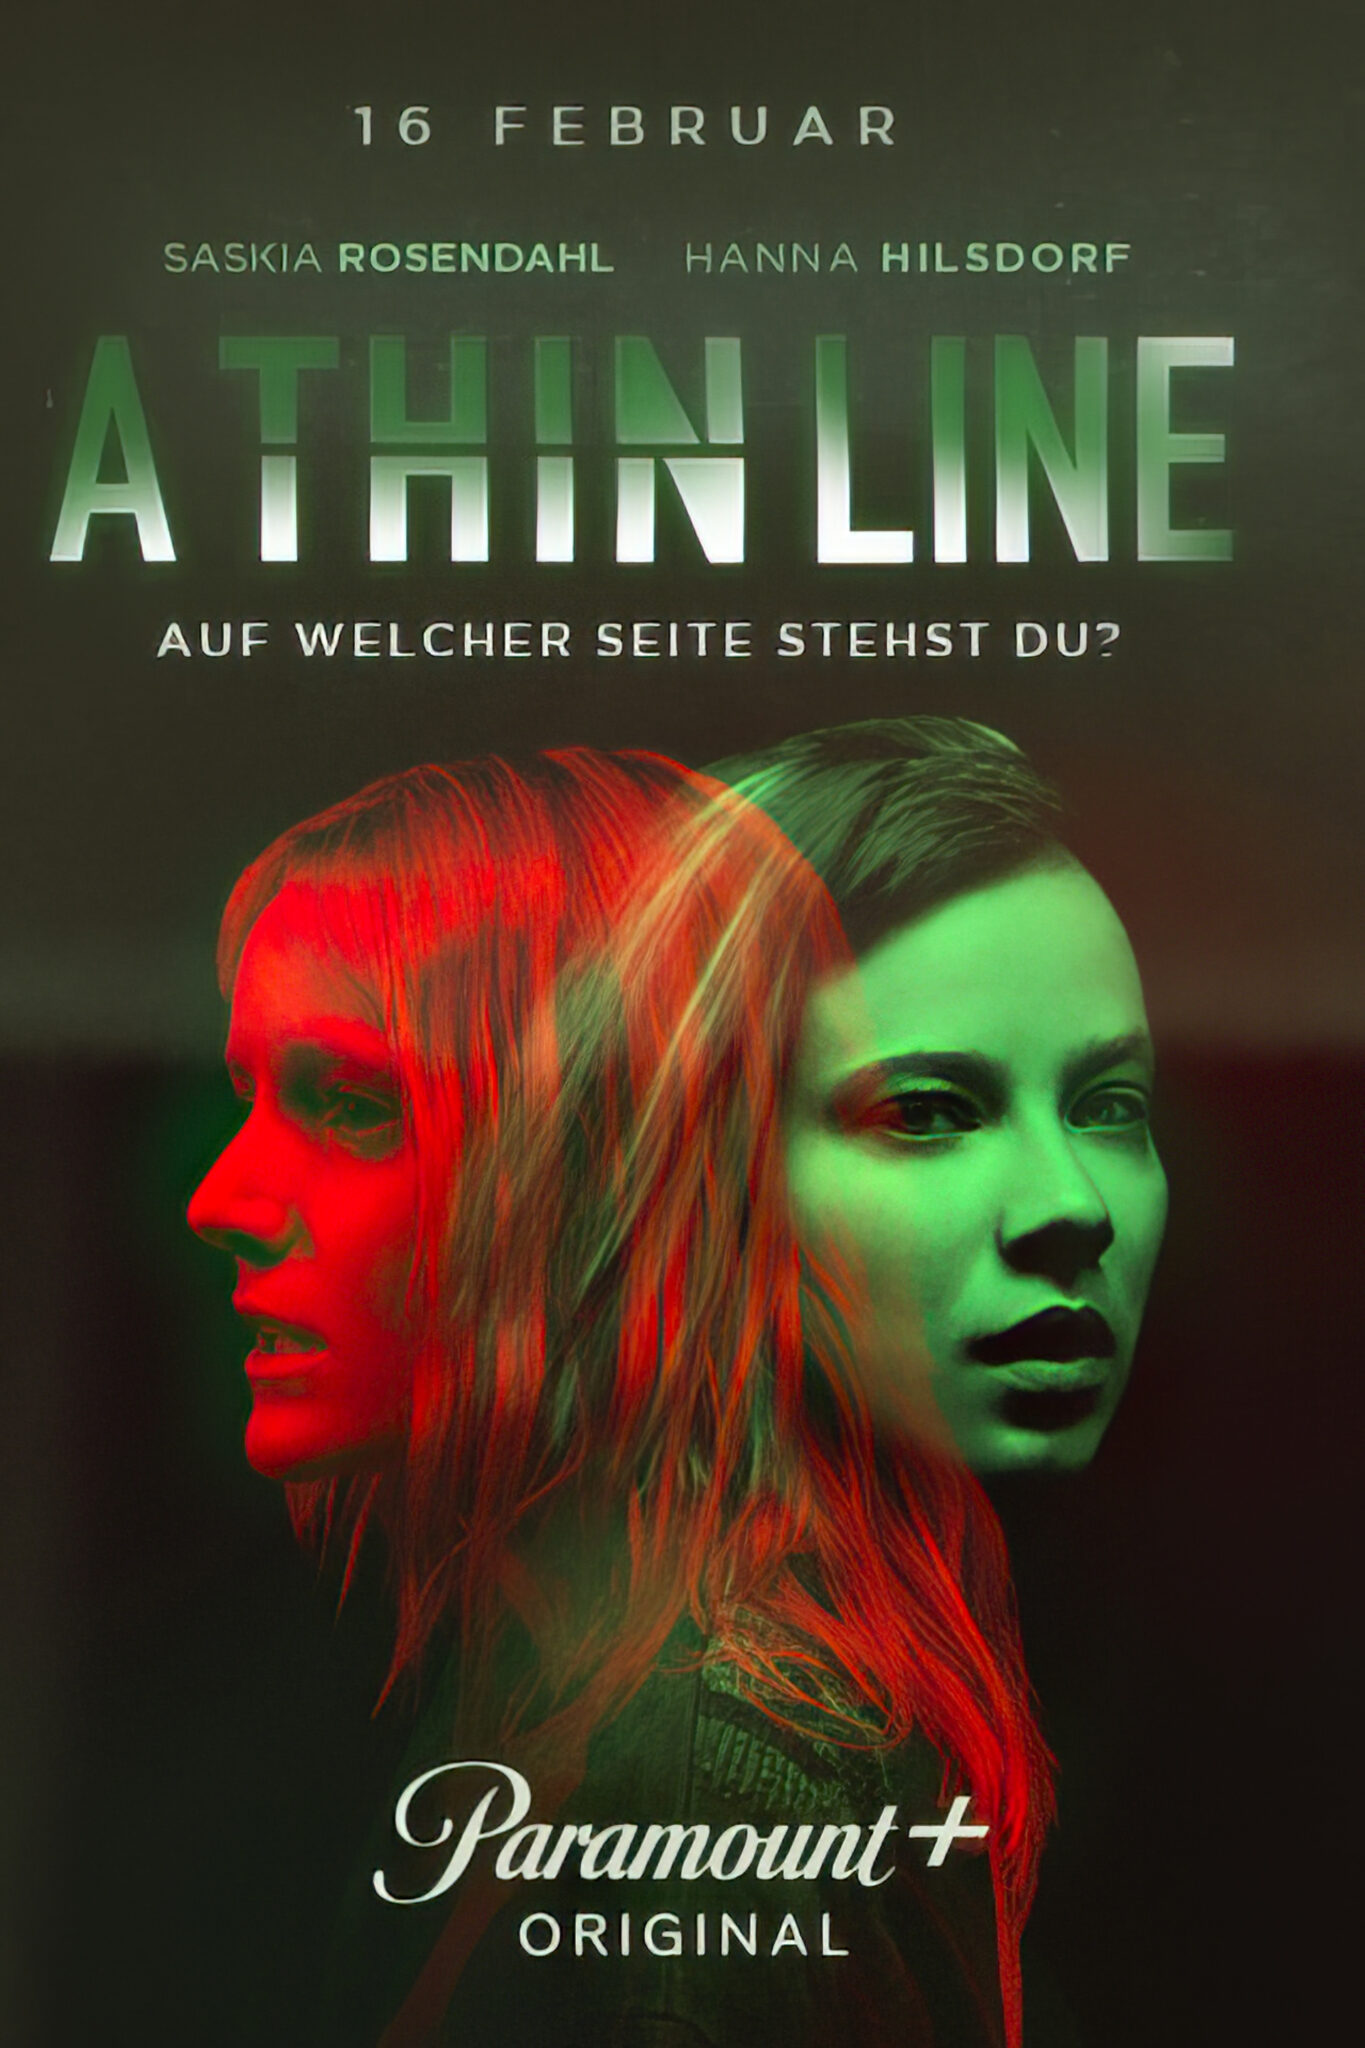 Das Poster zeigt in grün und rot die beiden Protagonistinnen von A Thin Line